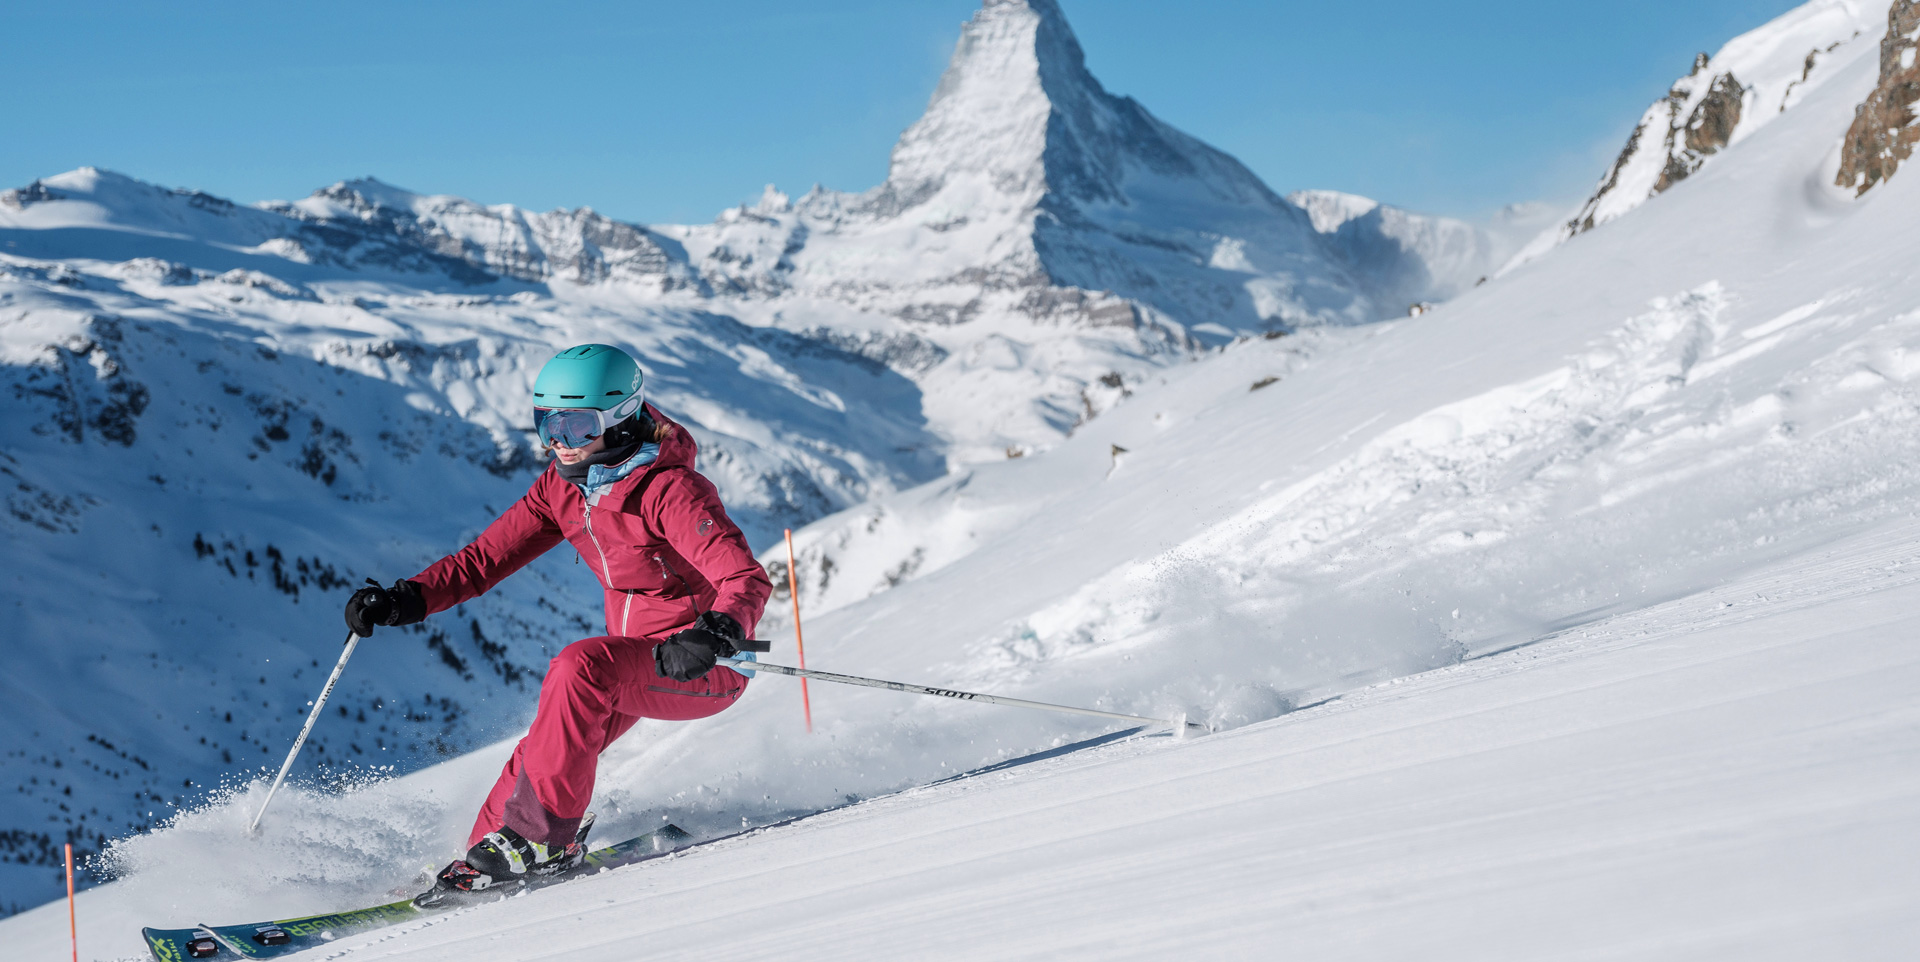 7_Skifahrerin-vor-Matterhorn-cr—Pascal-Gertschen-2018_Forside_Slide